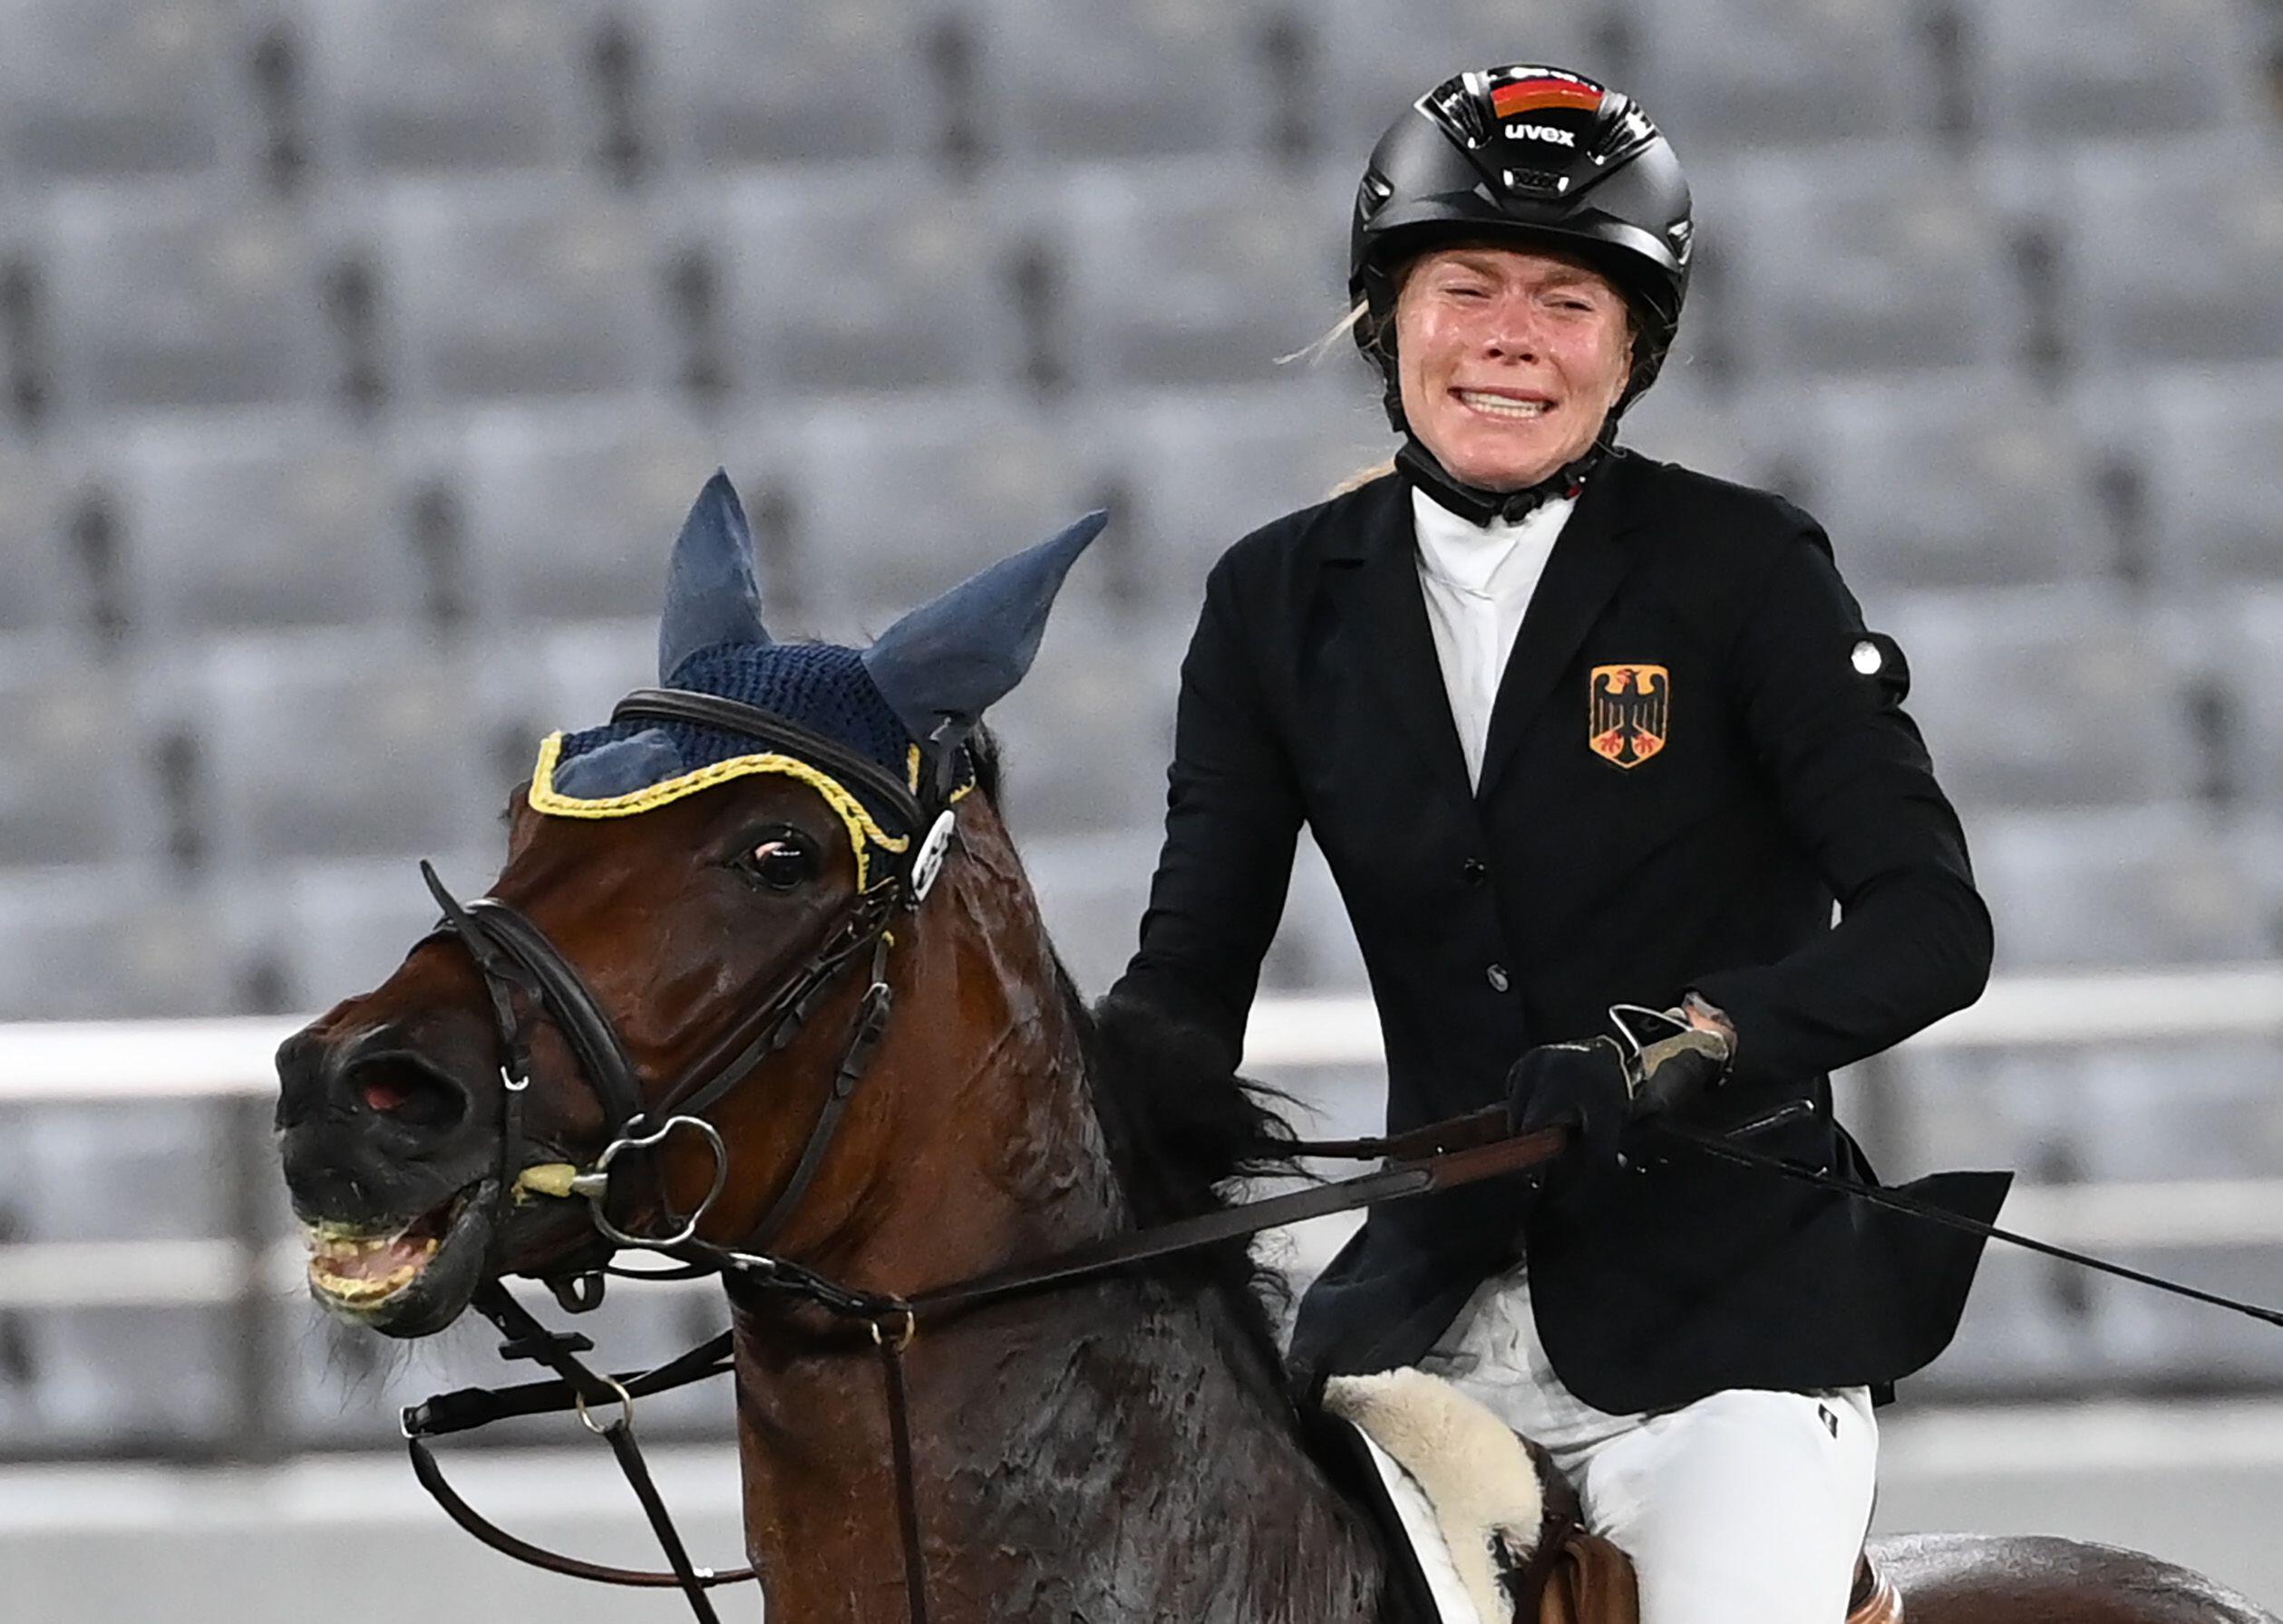 La amazona de Raisner, Annika Schleu, se quedó llorando después de que su caballo se negara a saltar.